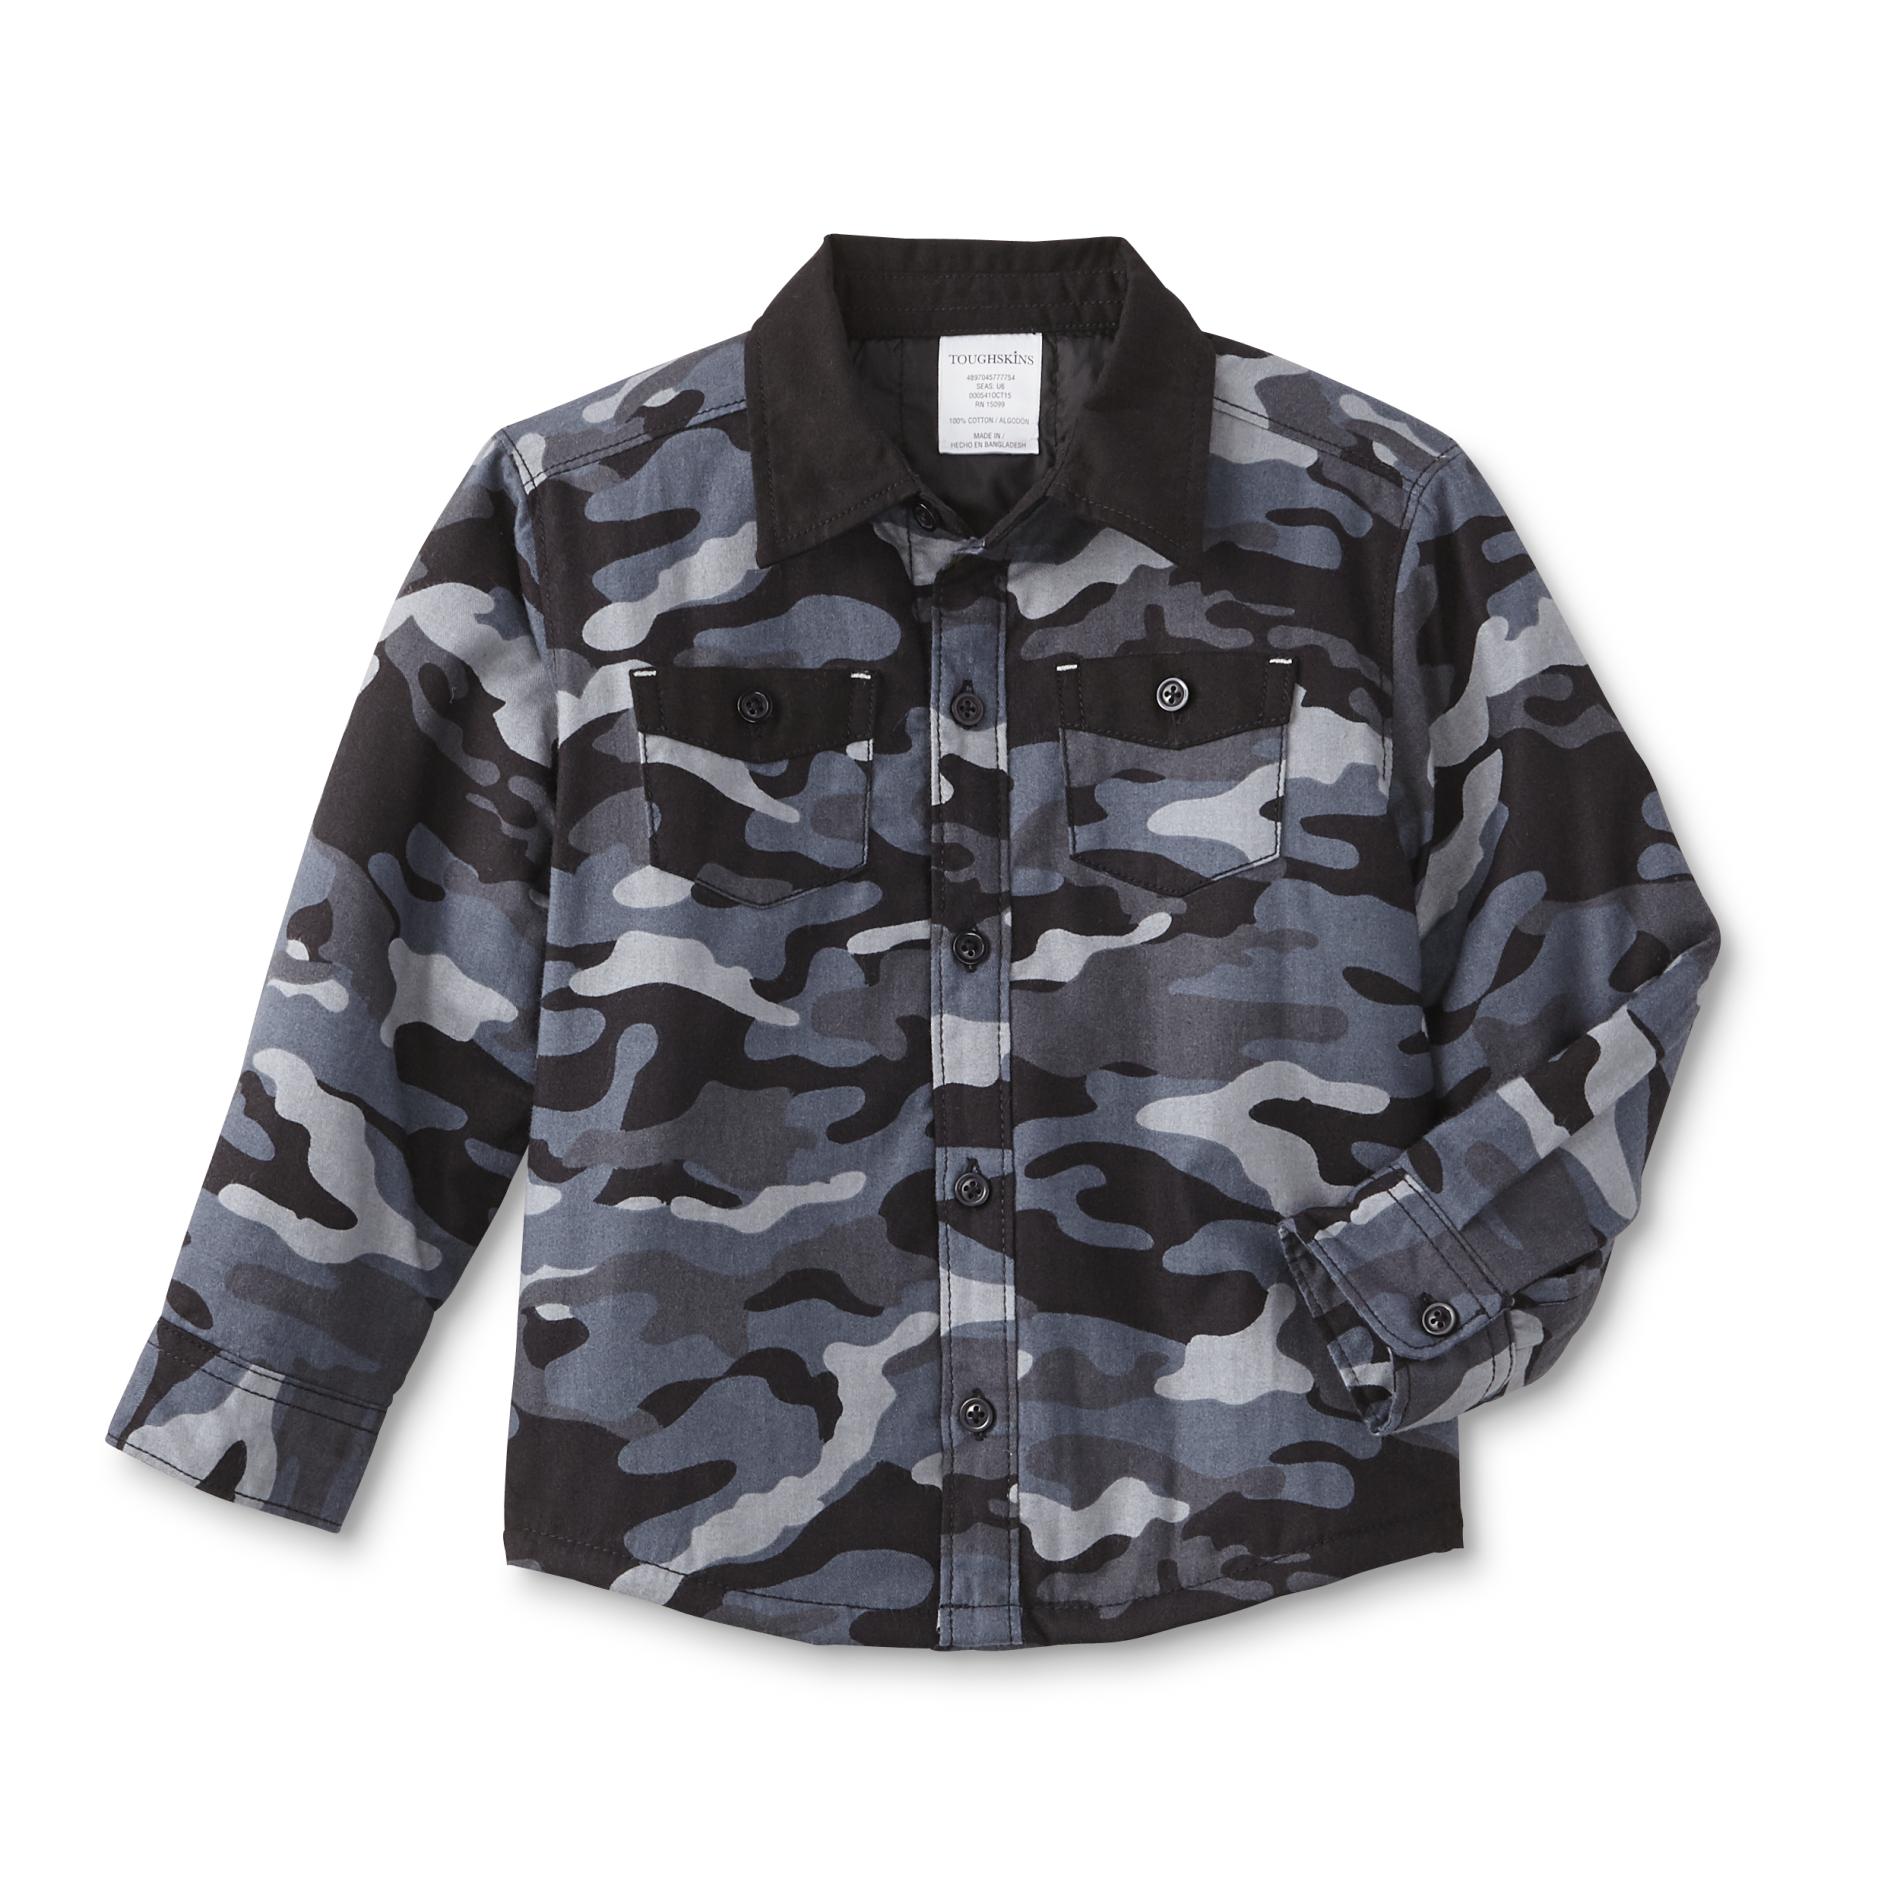 Toughskins Infant & Toddler Boys' Flannel Jacket - Camouflage